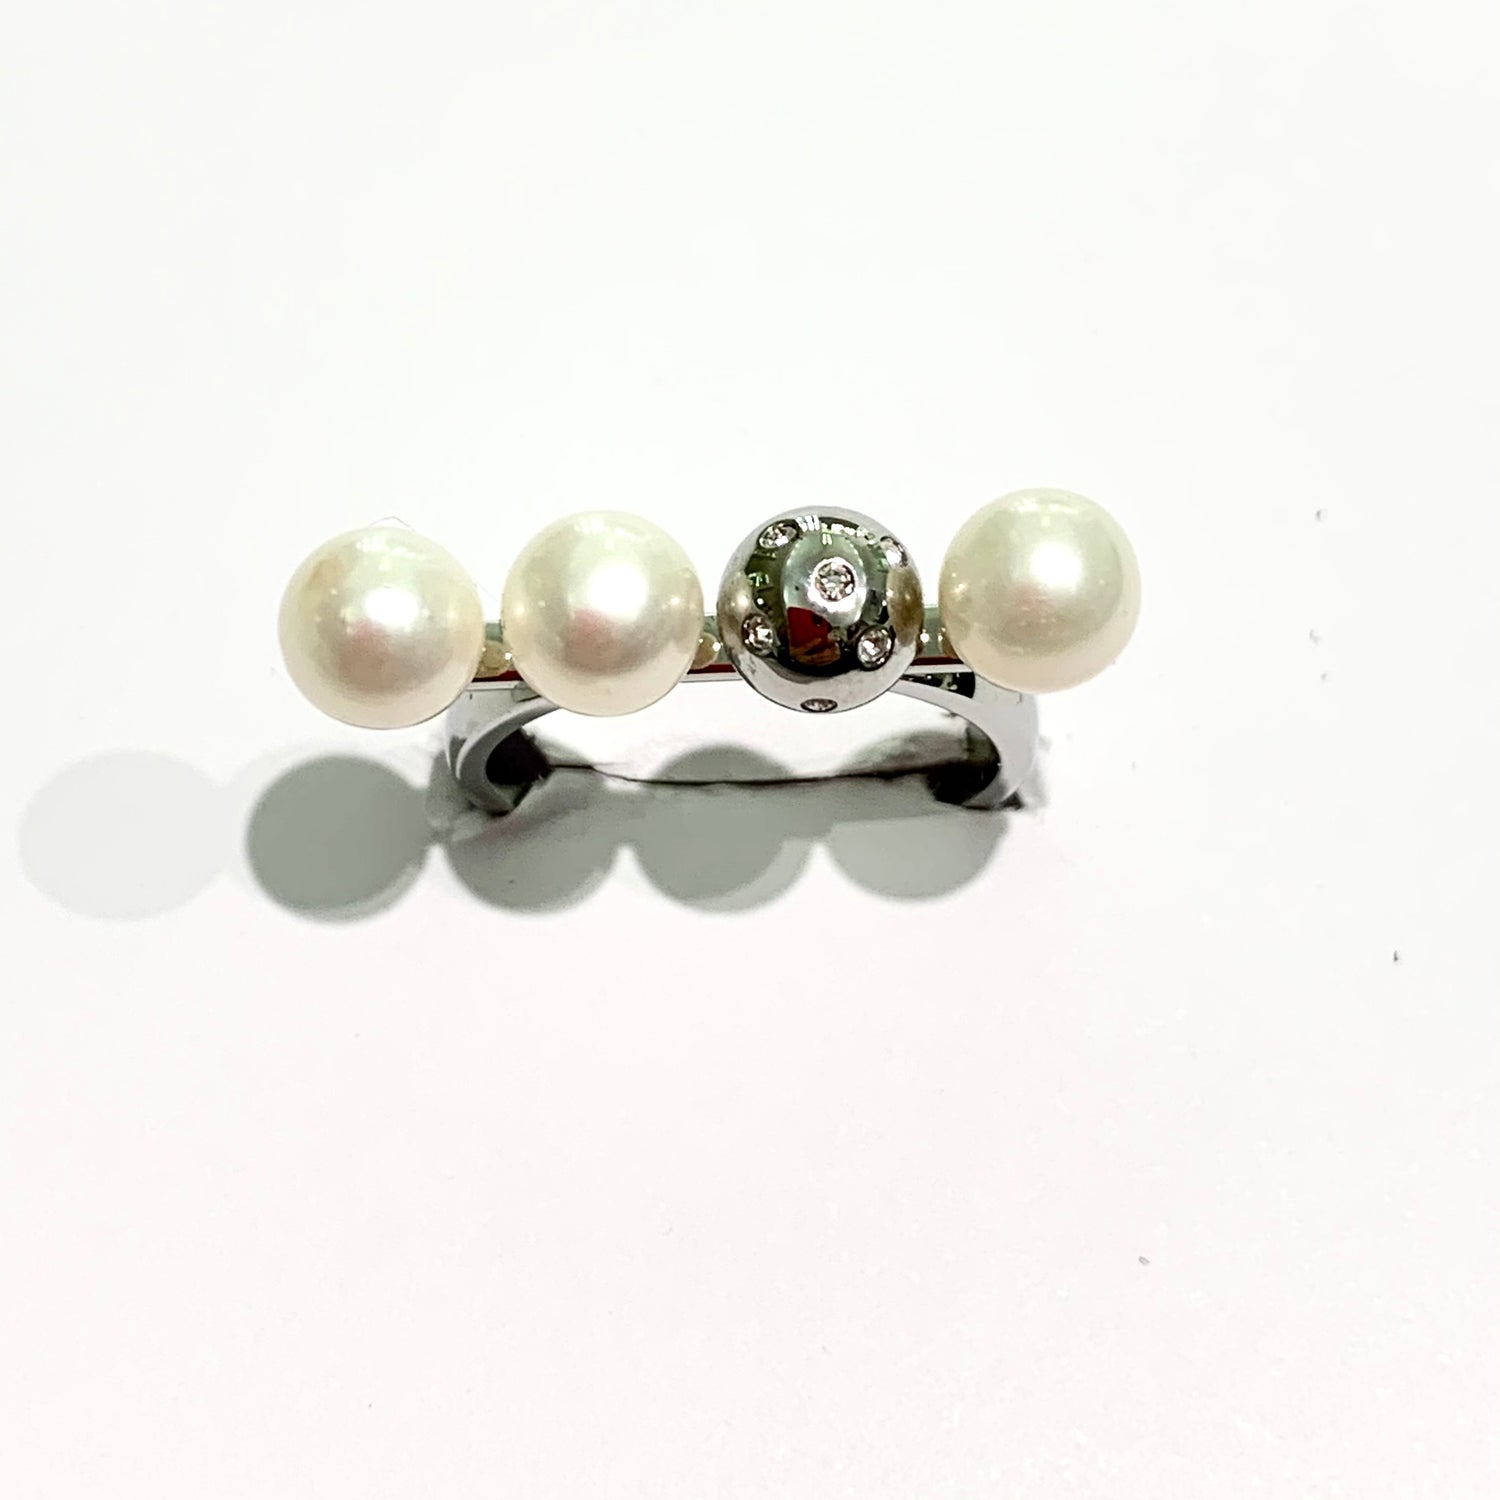 Anello in bijoux con barretta ricoperta da perle coltivate.  Lunghezza barretta 2,5 cm.  Grandezza singola perla 0,5 cm.  Più misure disponibili.